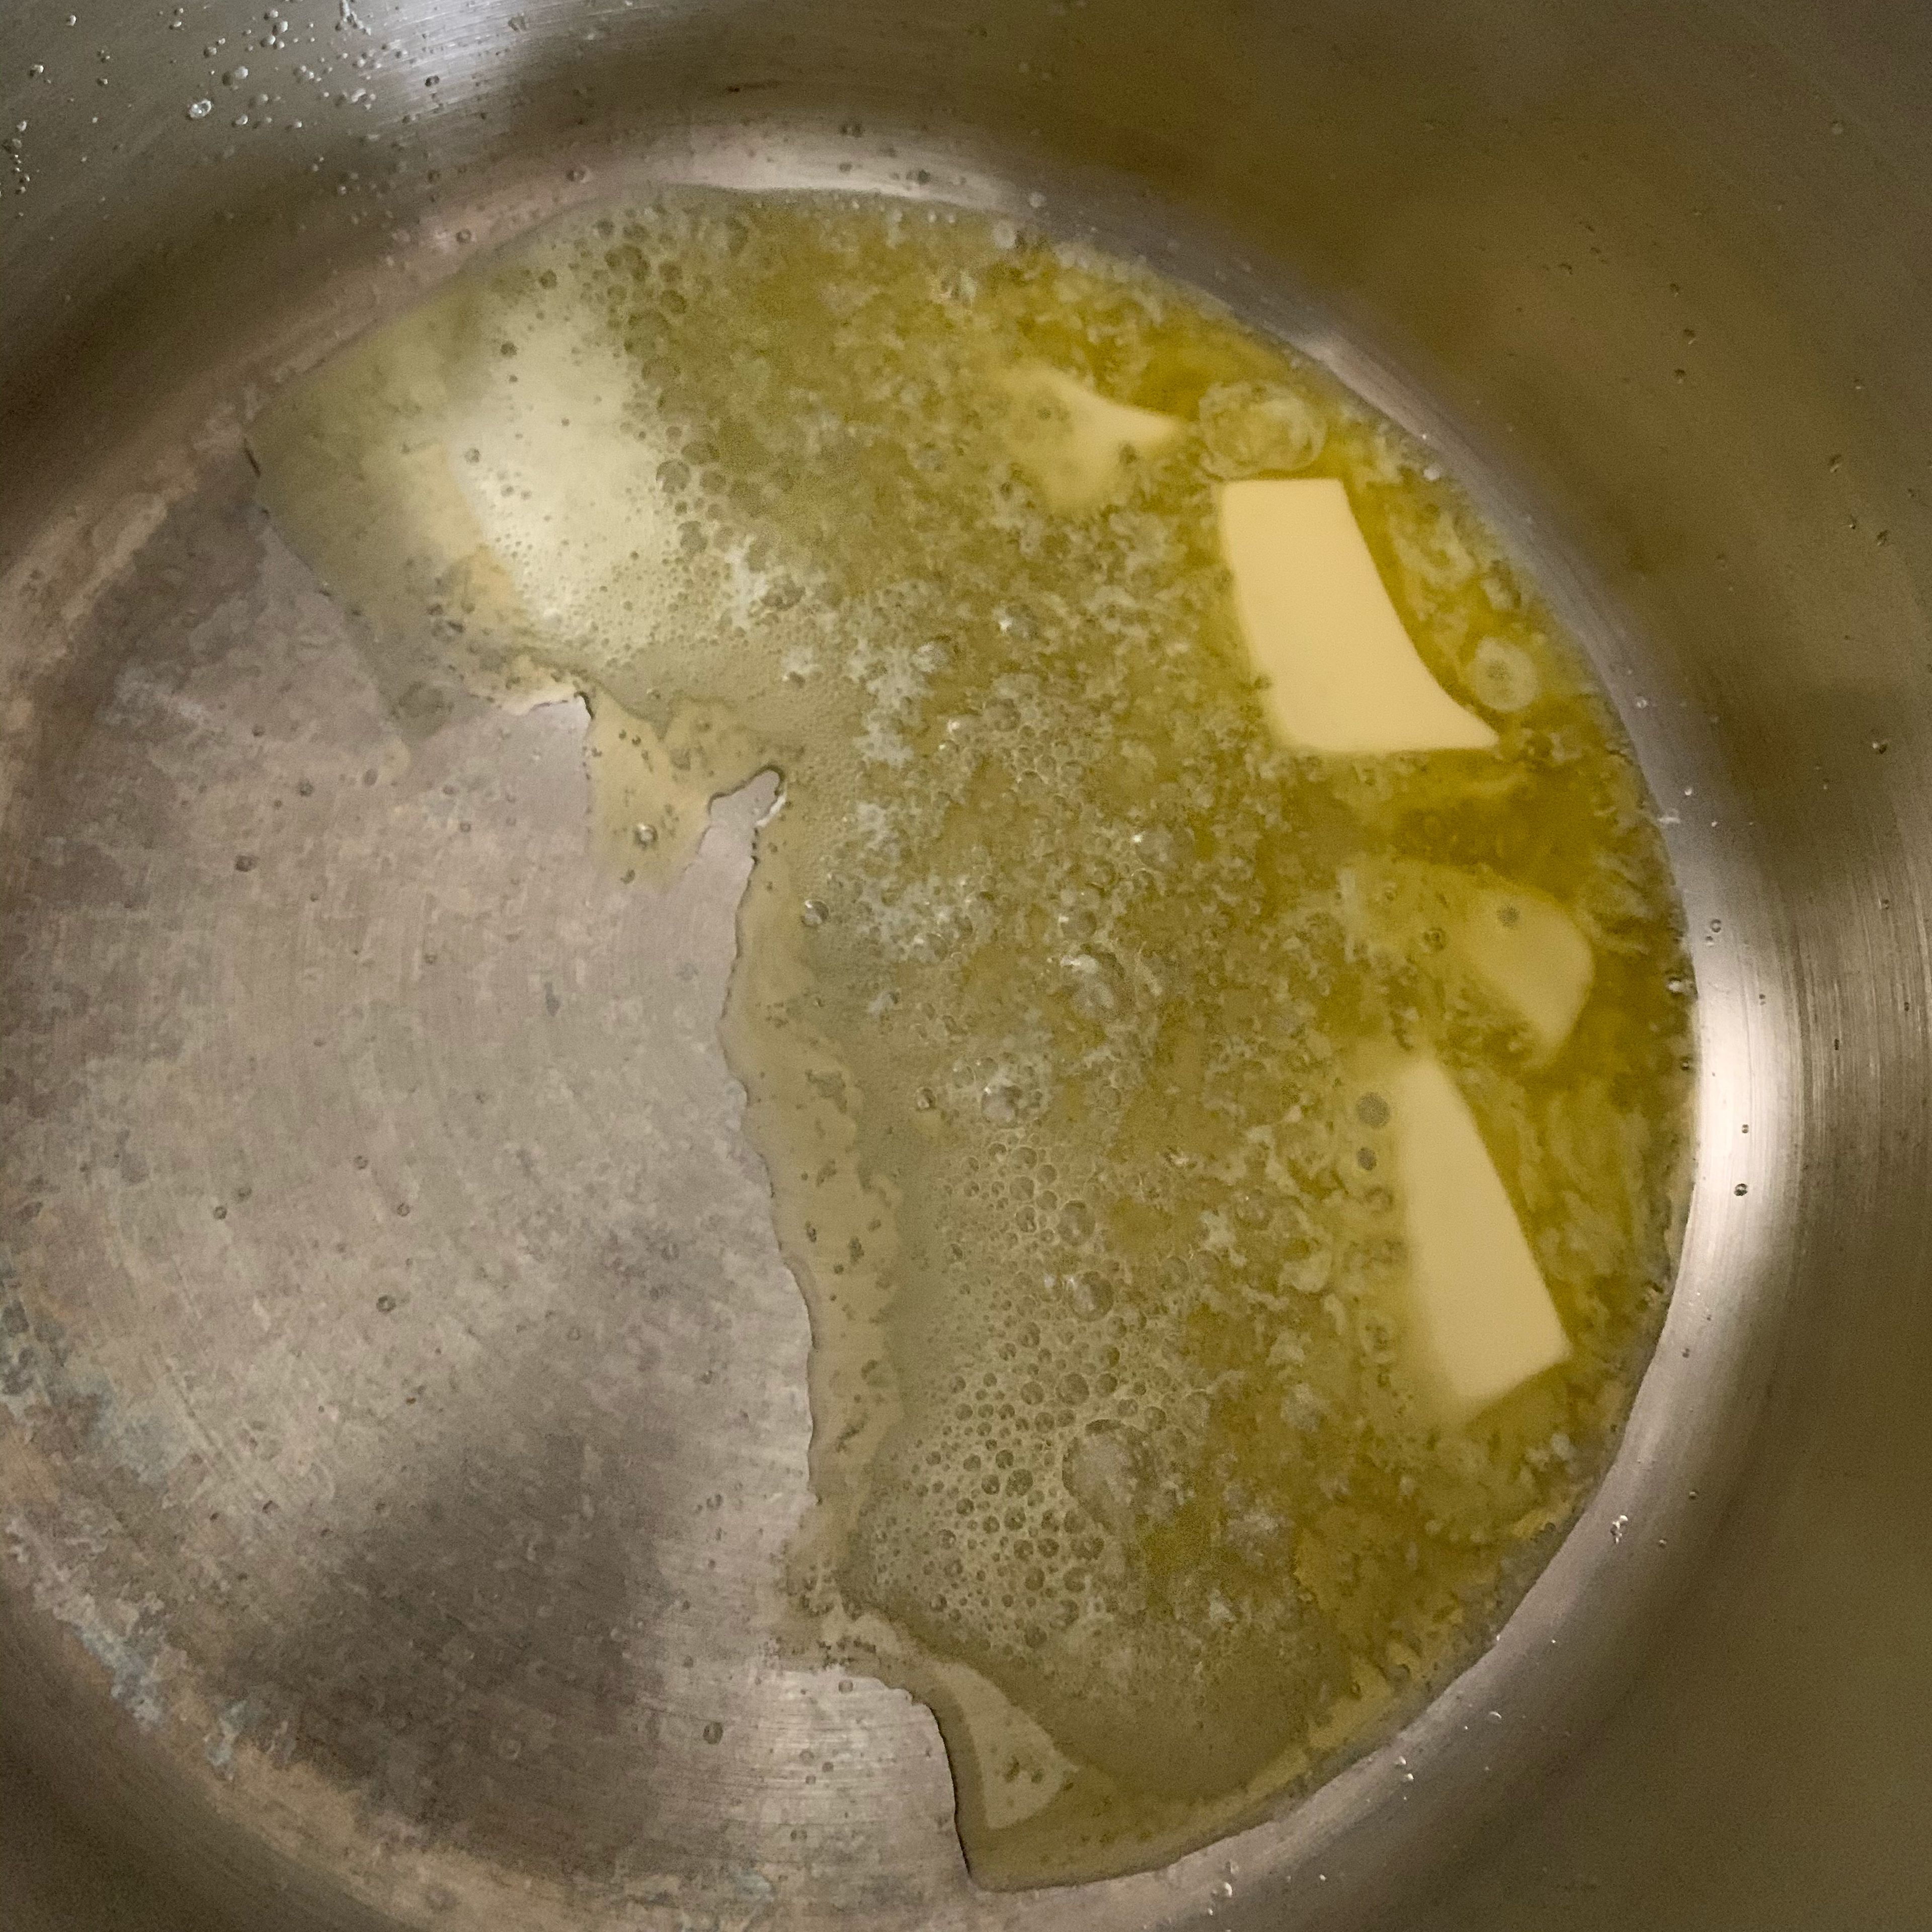 Heat butter in a saucepan 